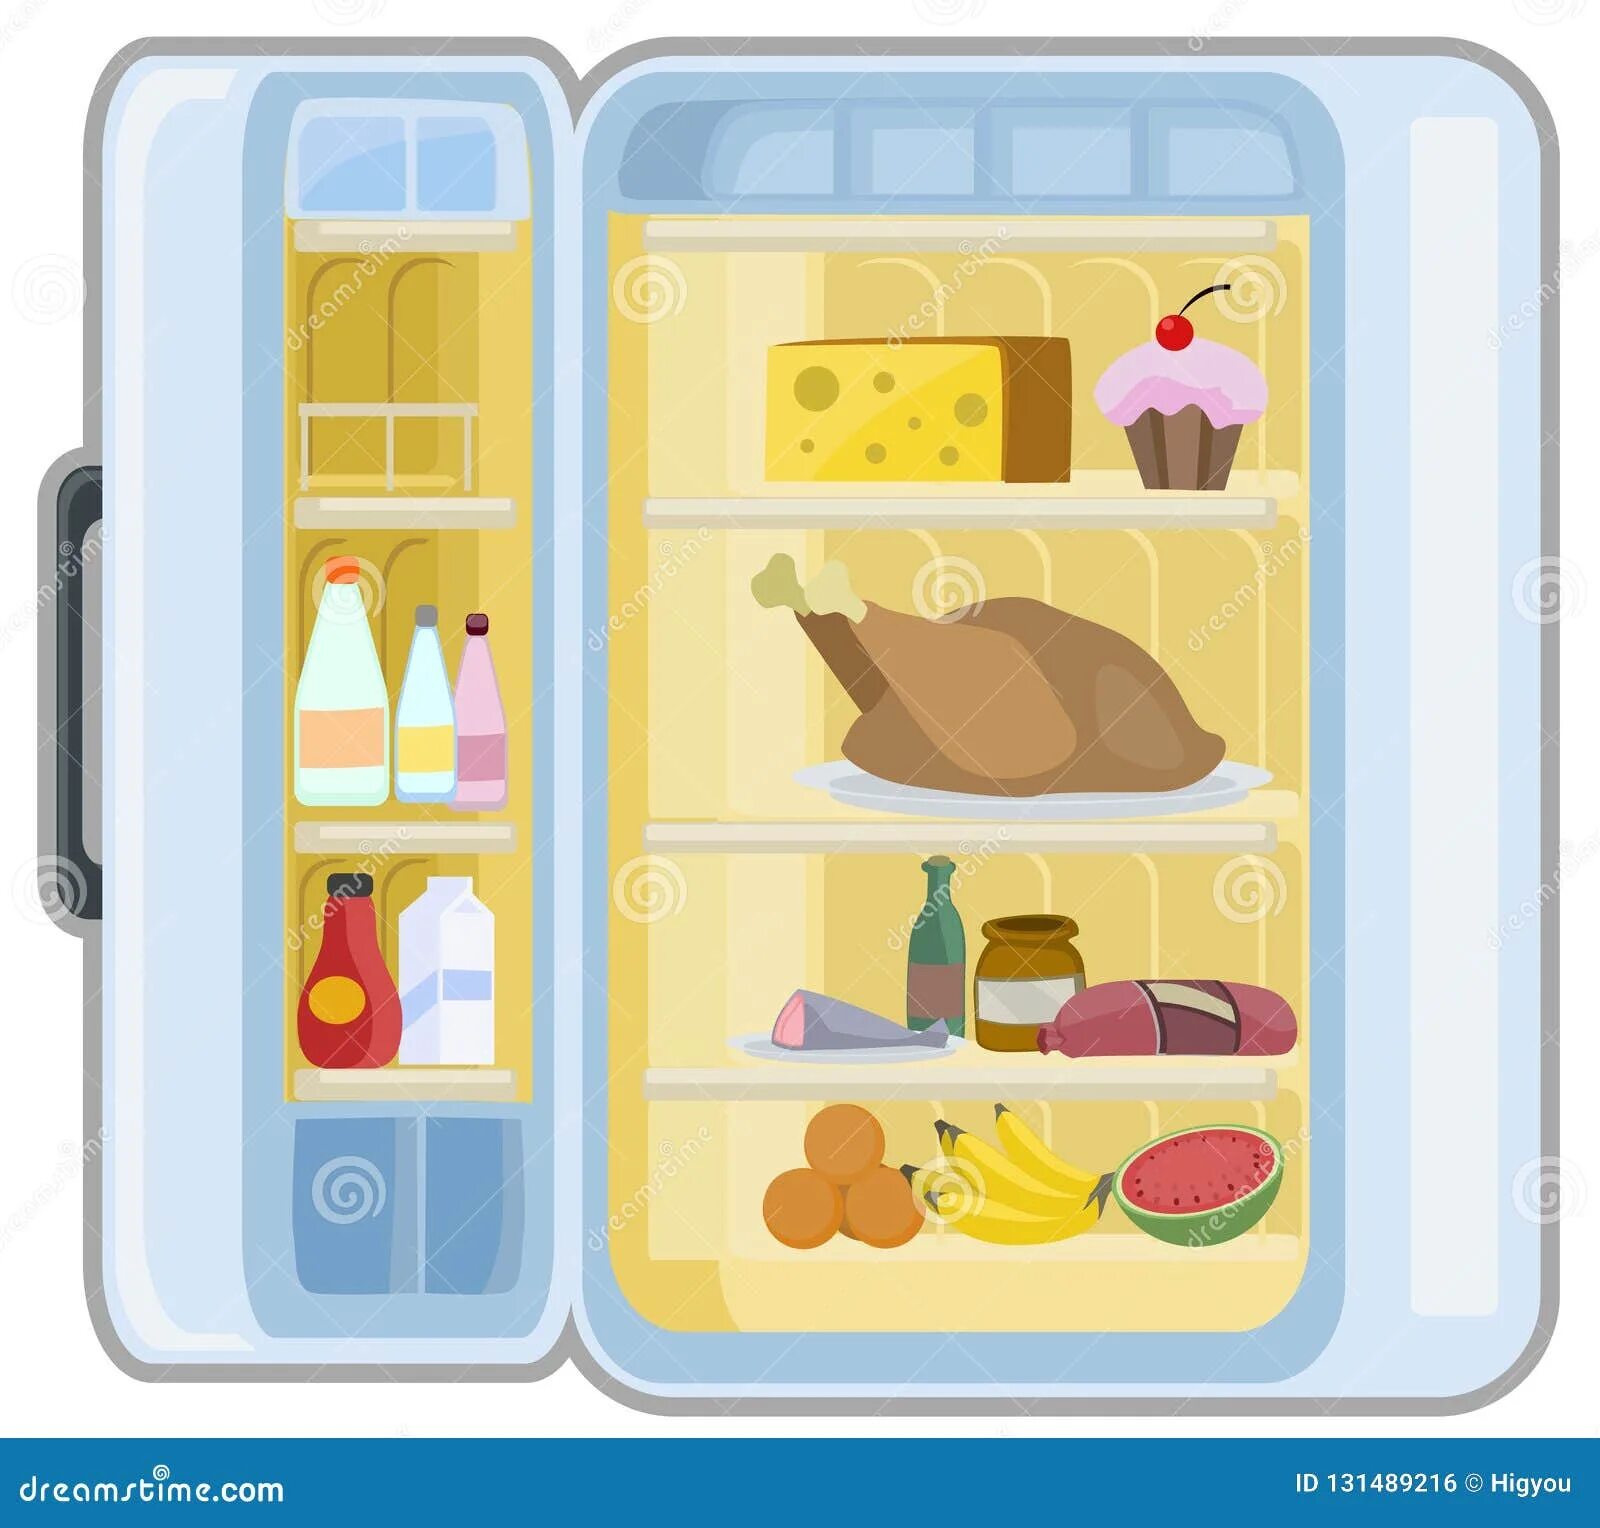 There is bread in the fridge. Холодильник с продуктами для детей. Холодильник с едой для детей. Холодильник с продуктами мультяшный. Рисование продукты в холодильнике.